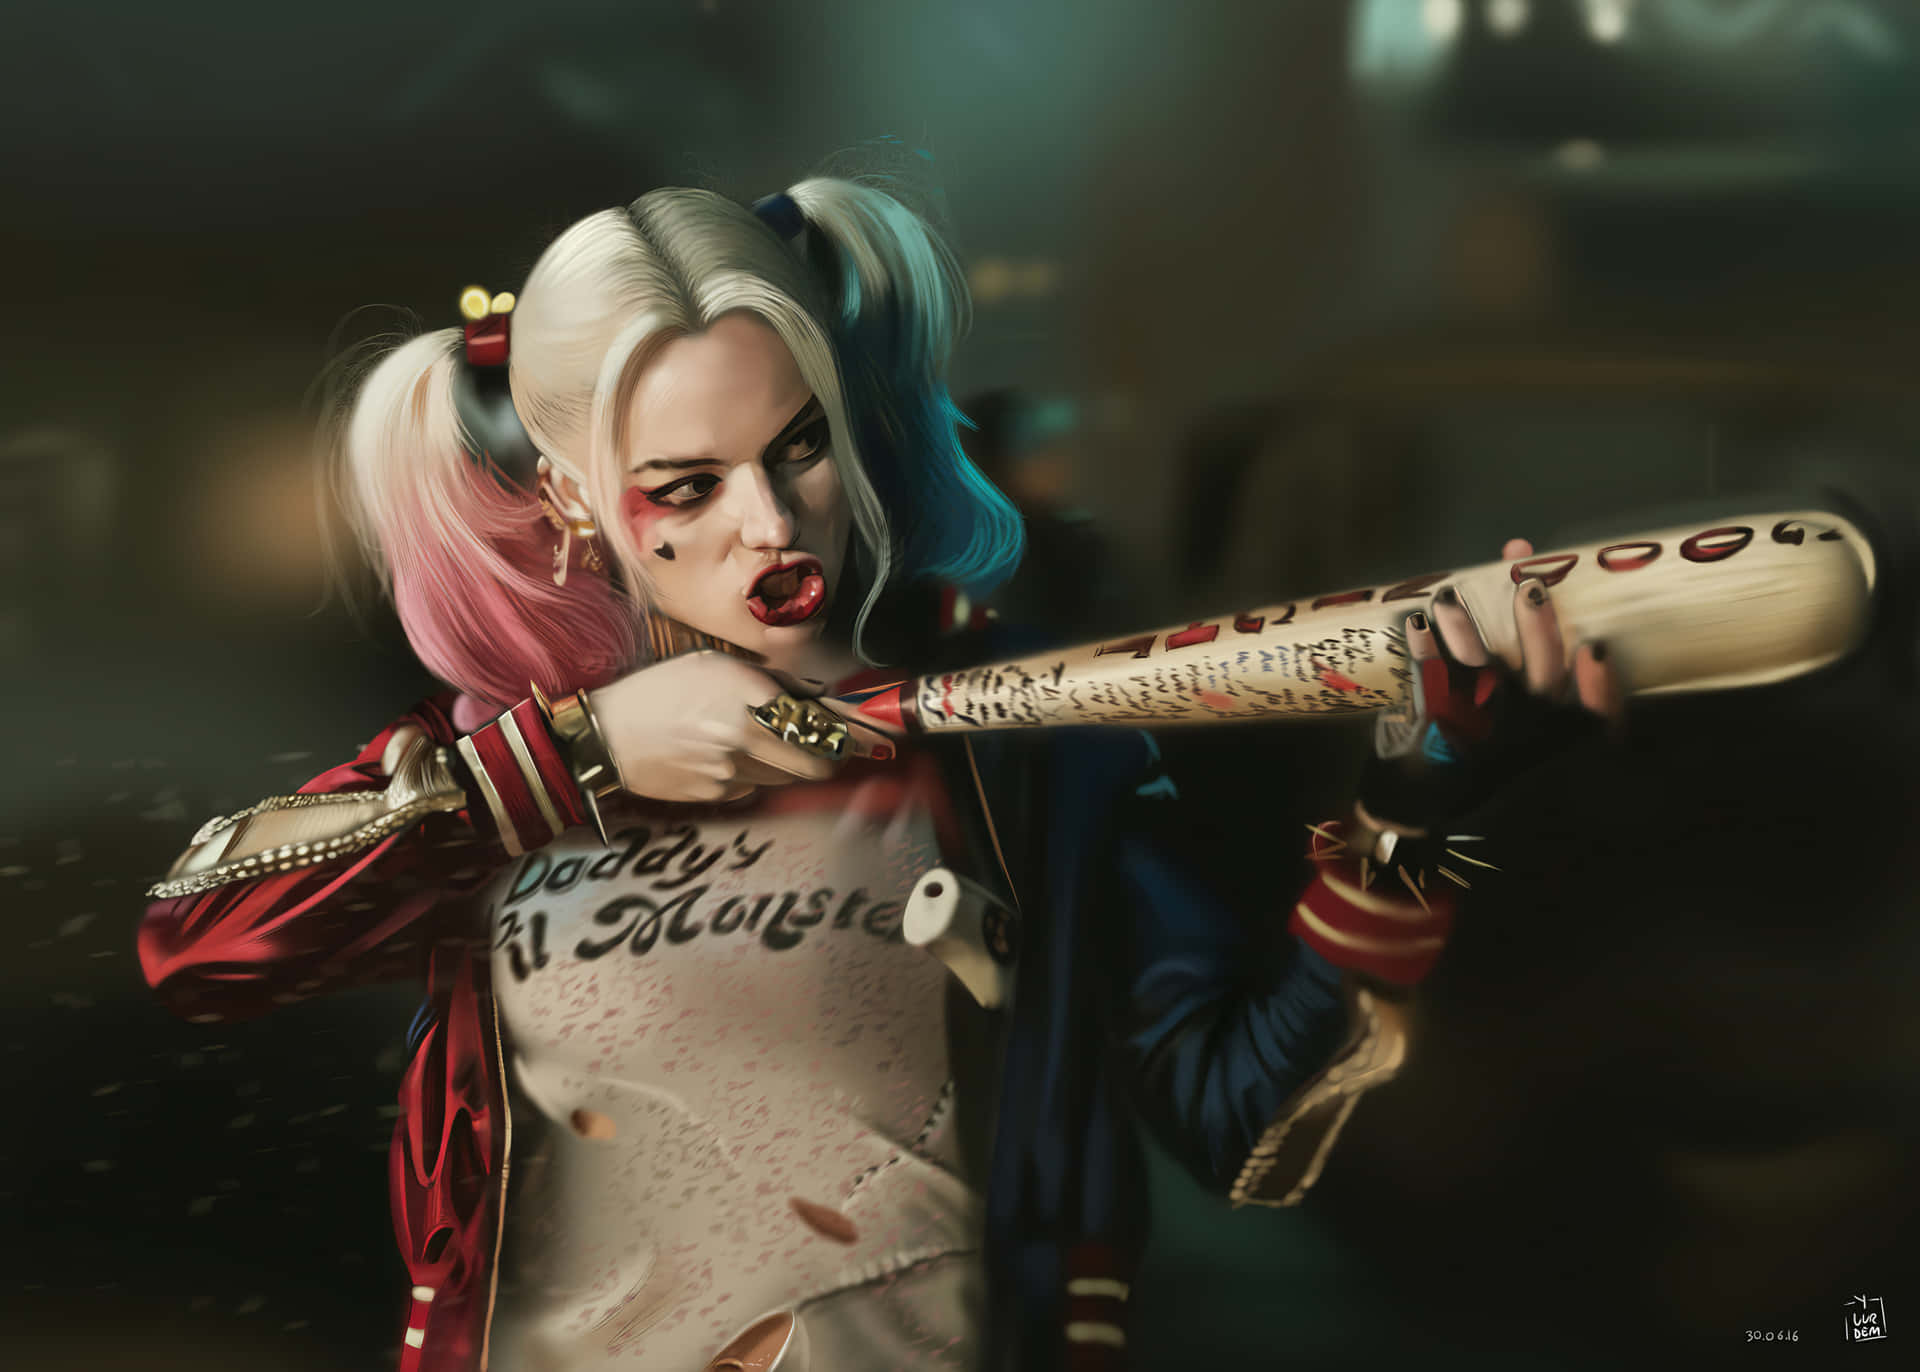 Margotrobbie Präsentiert Einen Gewagten Look Als Harley Quinn In Suicide Squad. Wallpaper